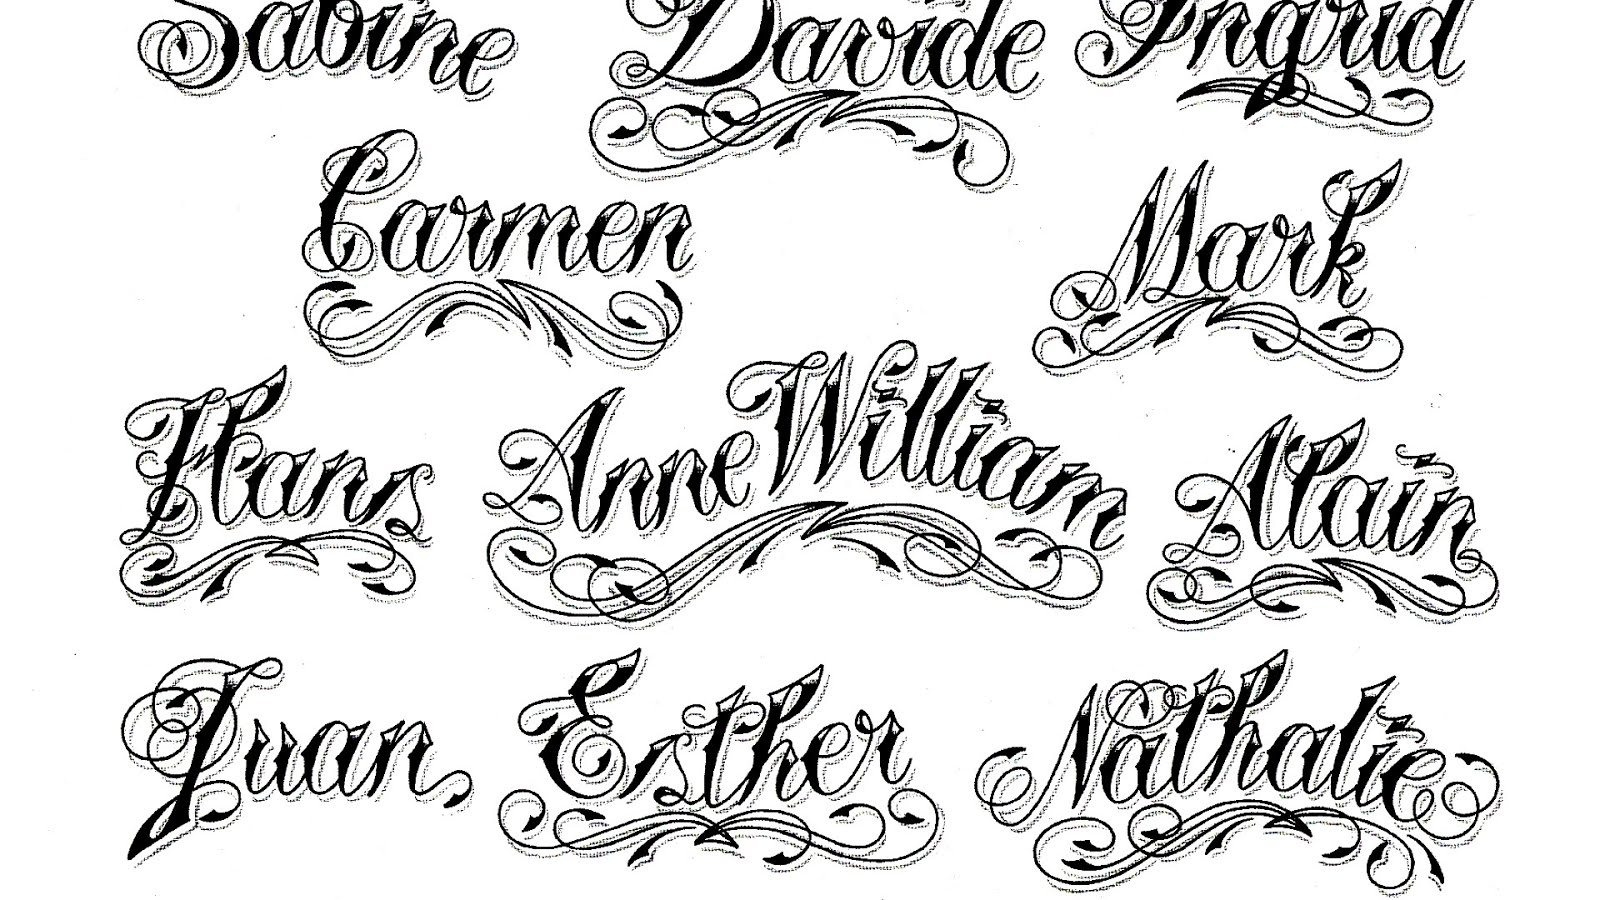 2. Tattoo Font Generator - Tattoo Lettering - wide 8